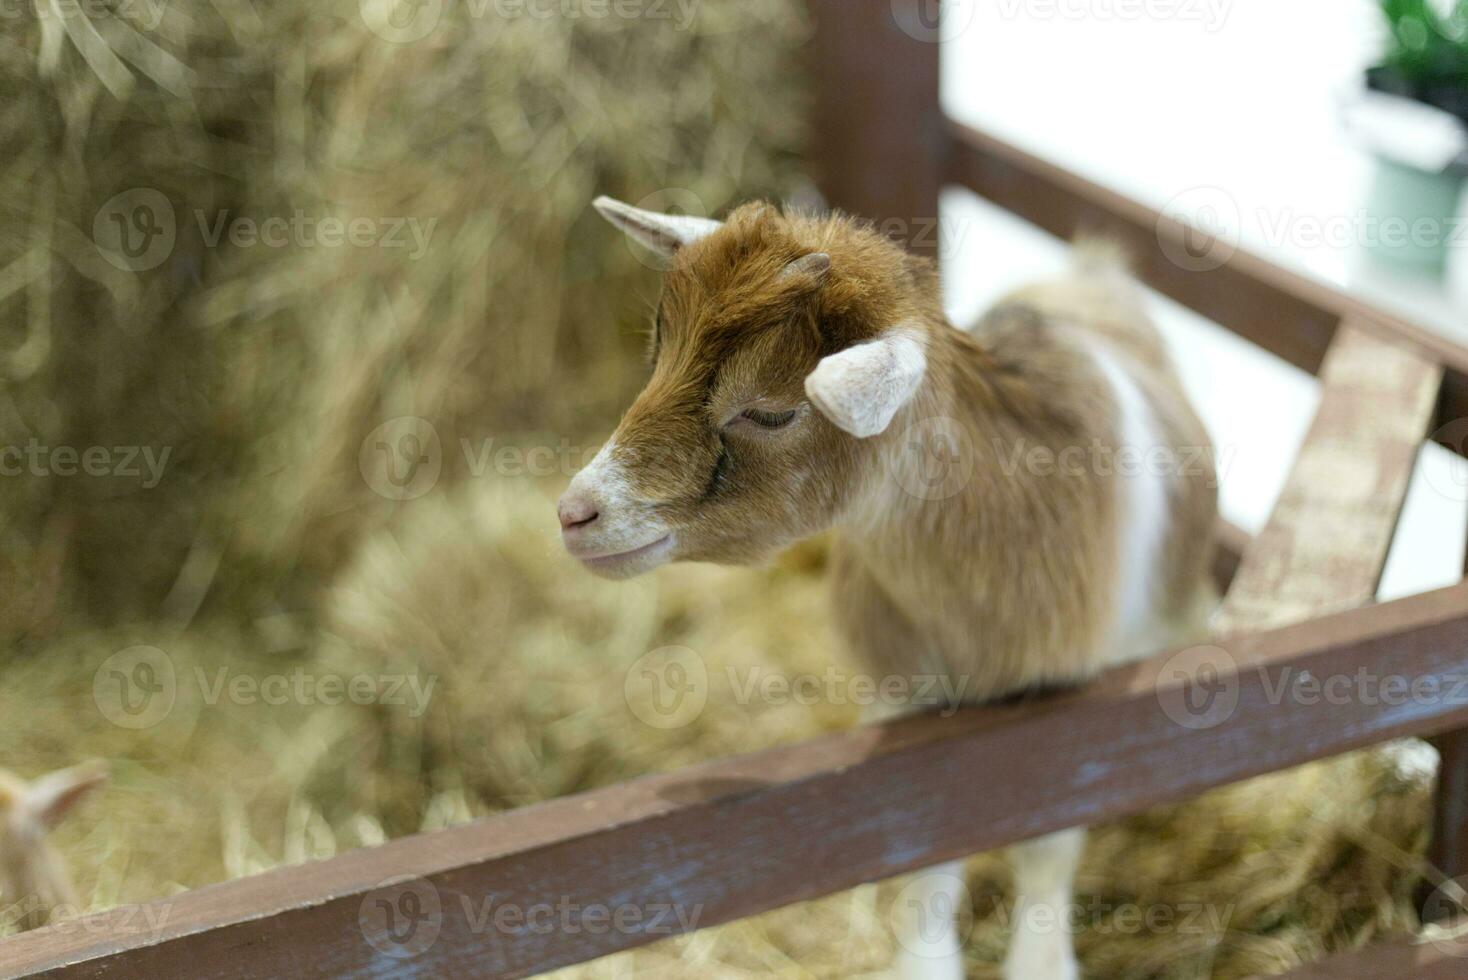 bébé chèvre dans le spectacle cage afficher Grange paille ferme dans le animal de compagnie expo photo